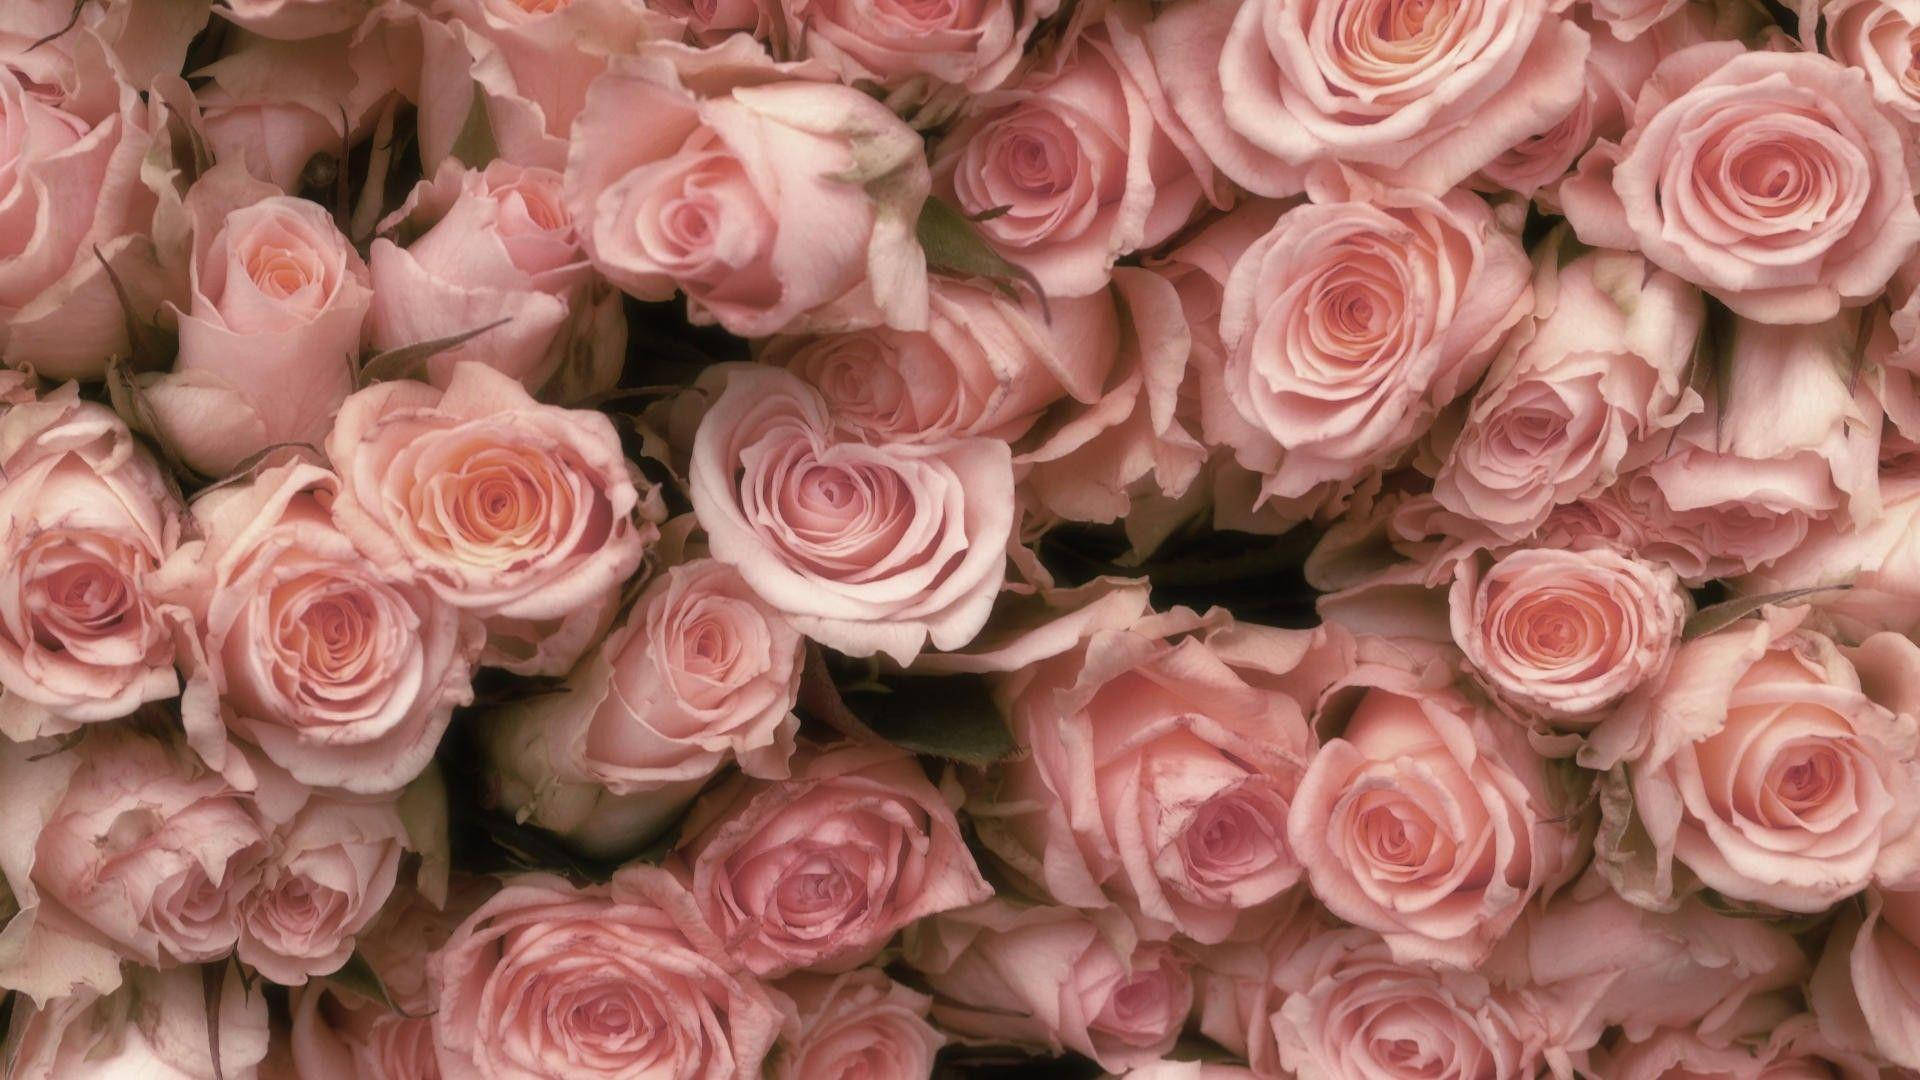 Bliinspirerad Med En Vacker Rosa Vintage-estetik. Wallpaper